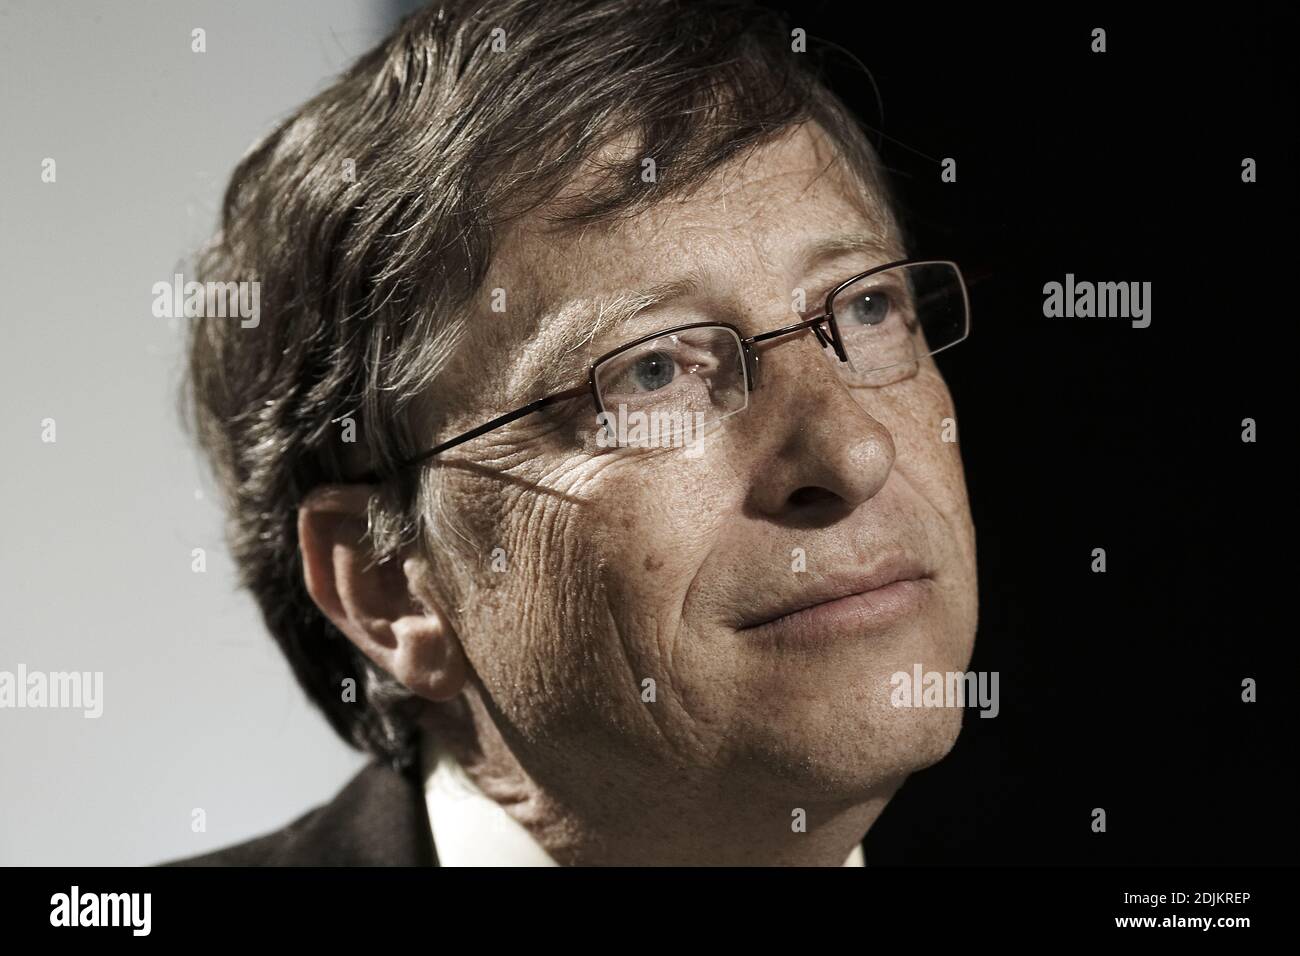 GRANDE-BRETAGNE / Angleterre / Londres / le fondateur de Microsoft Bill Gates le 11/2009 juin à Londres. Banque D'Images